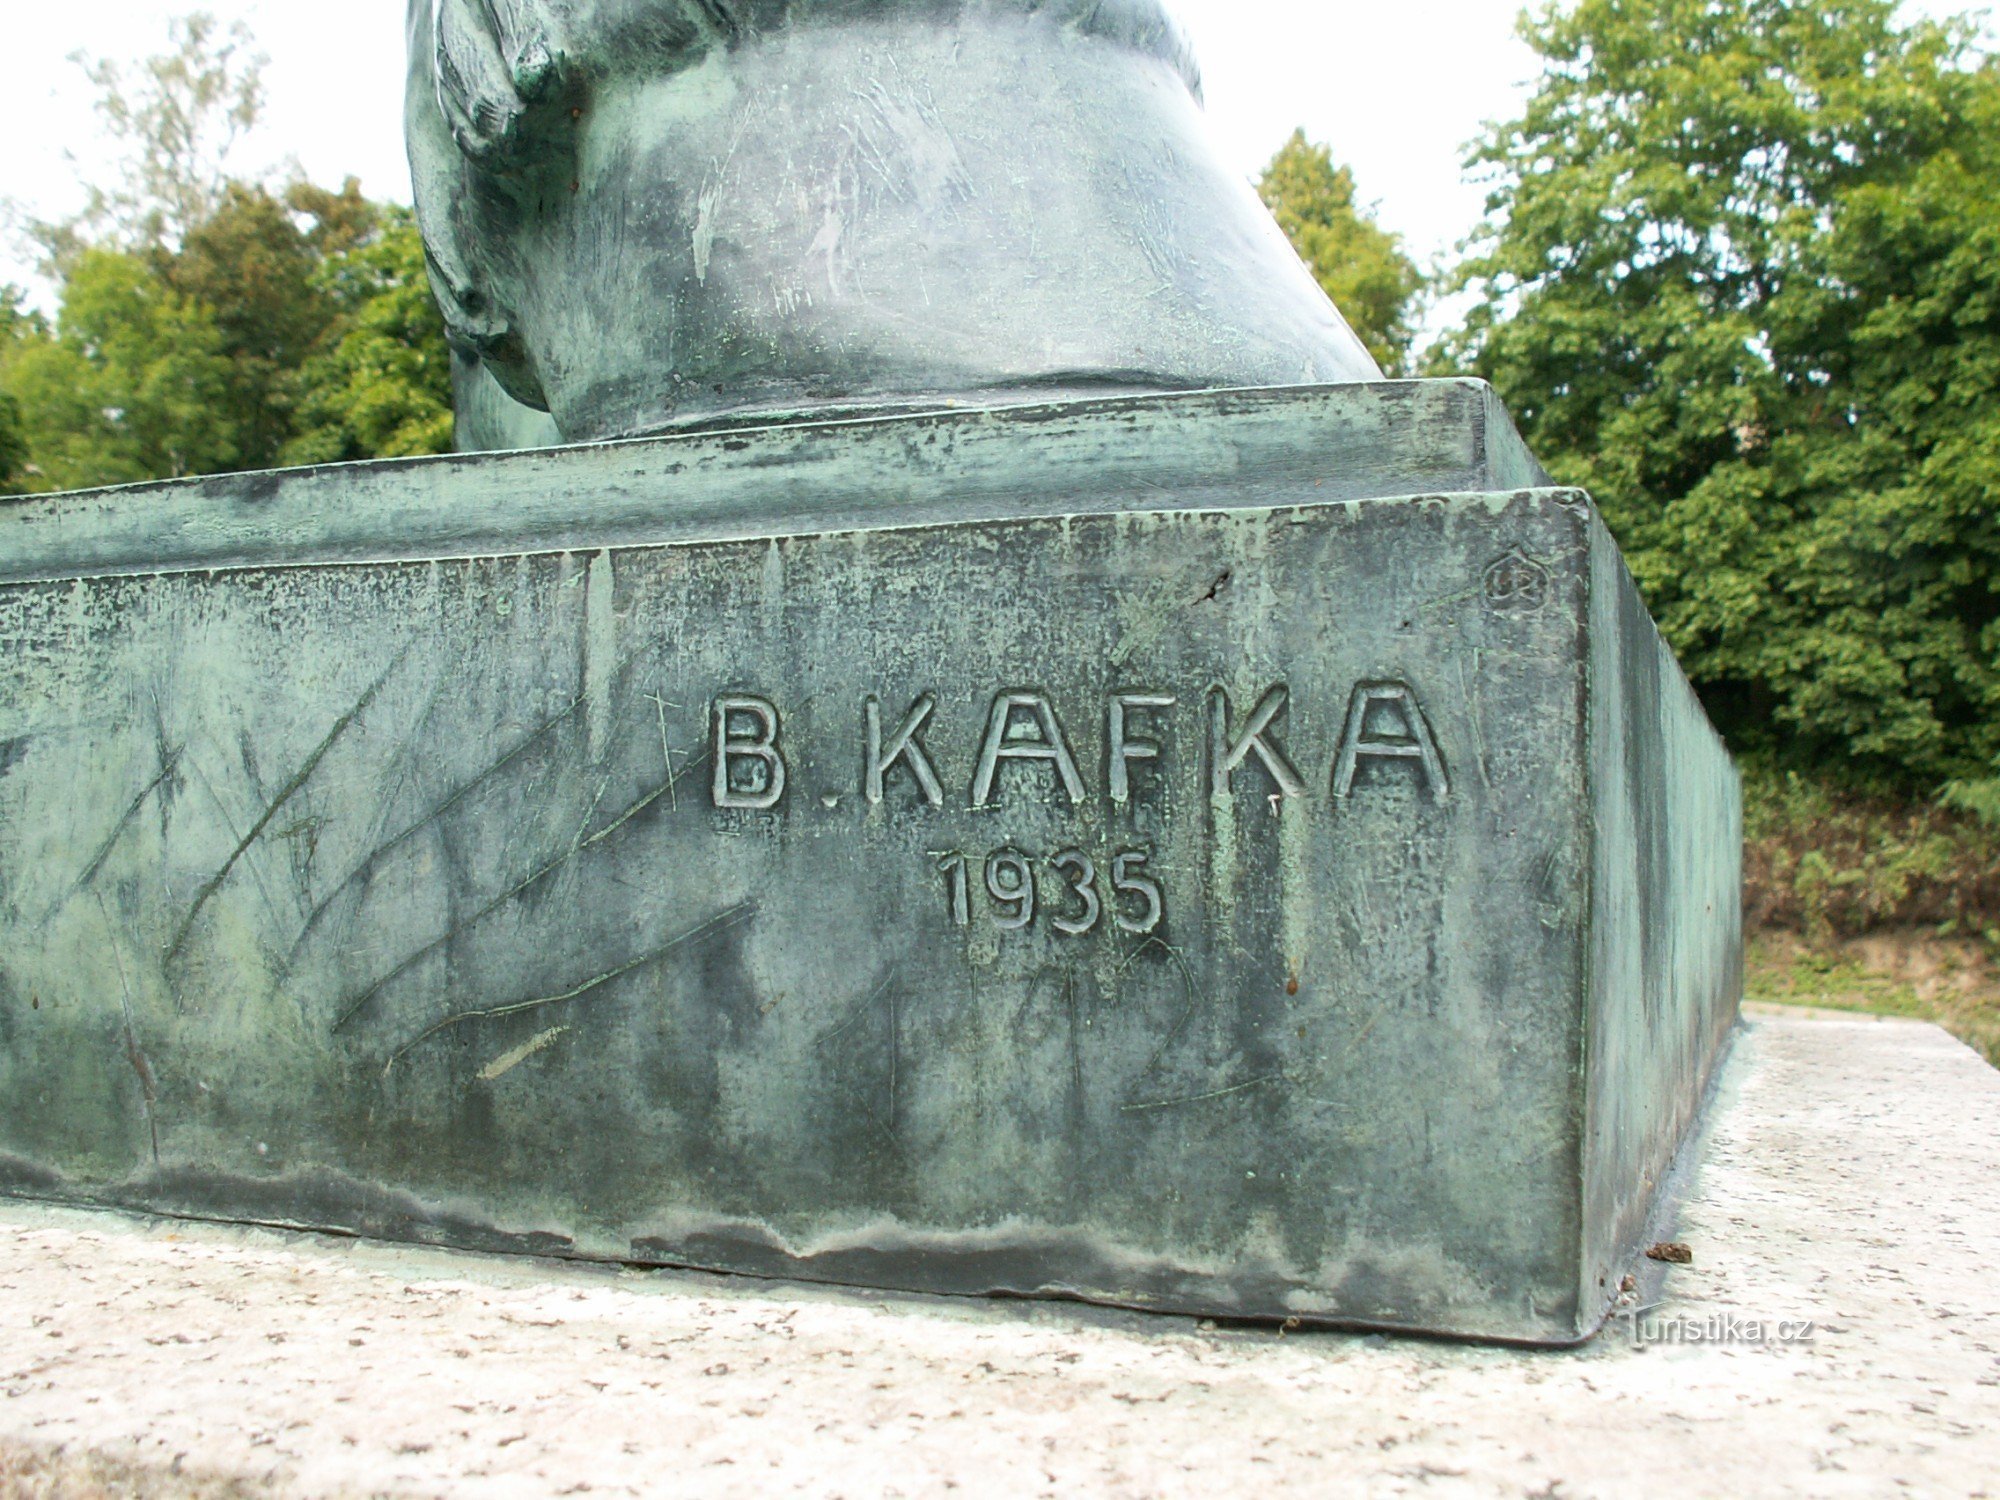 Detail der Statue mit dem Namen ihres Autors